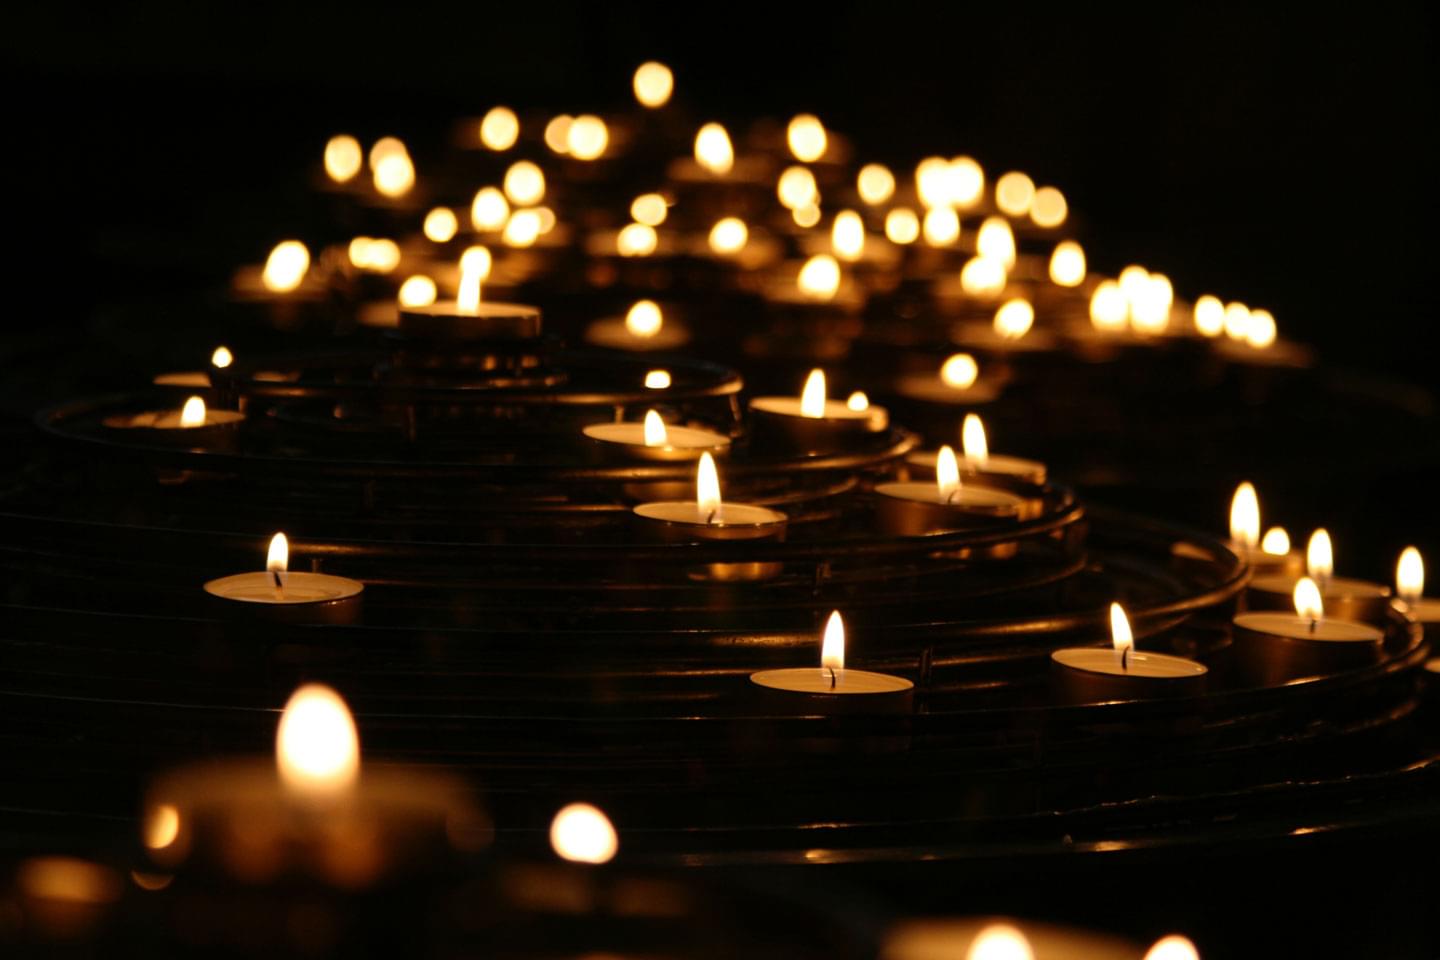 Viele Teelichter im Dunkeln ergeben ein Meer aus Kerzen, Kerzenlicht als Zeichen der Andacht und Trauer